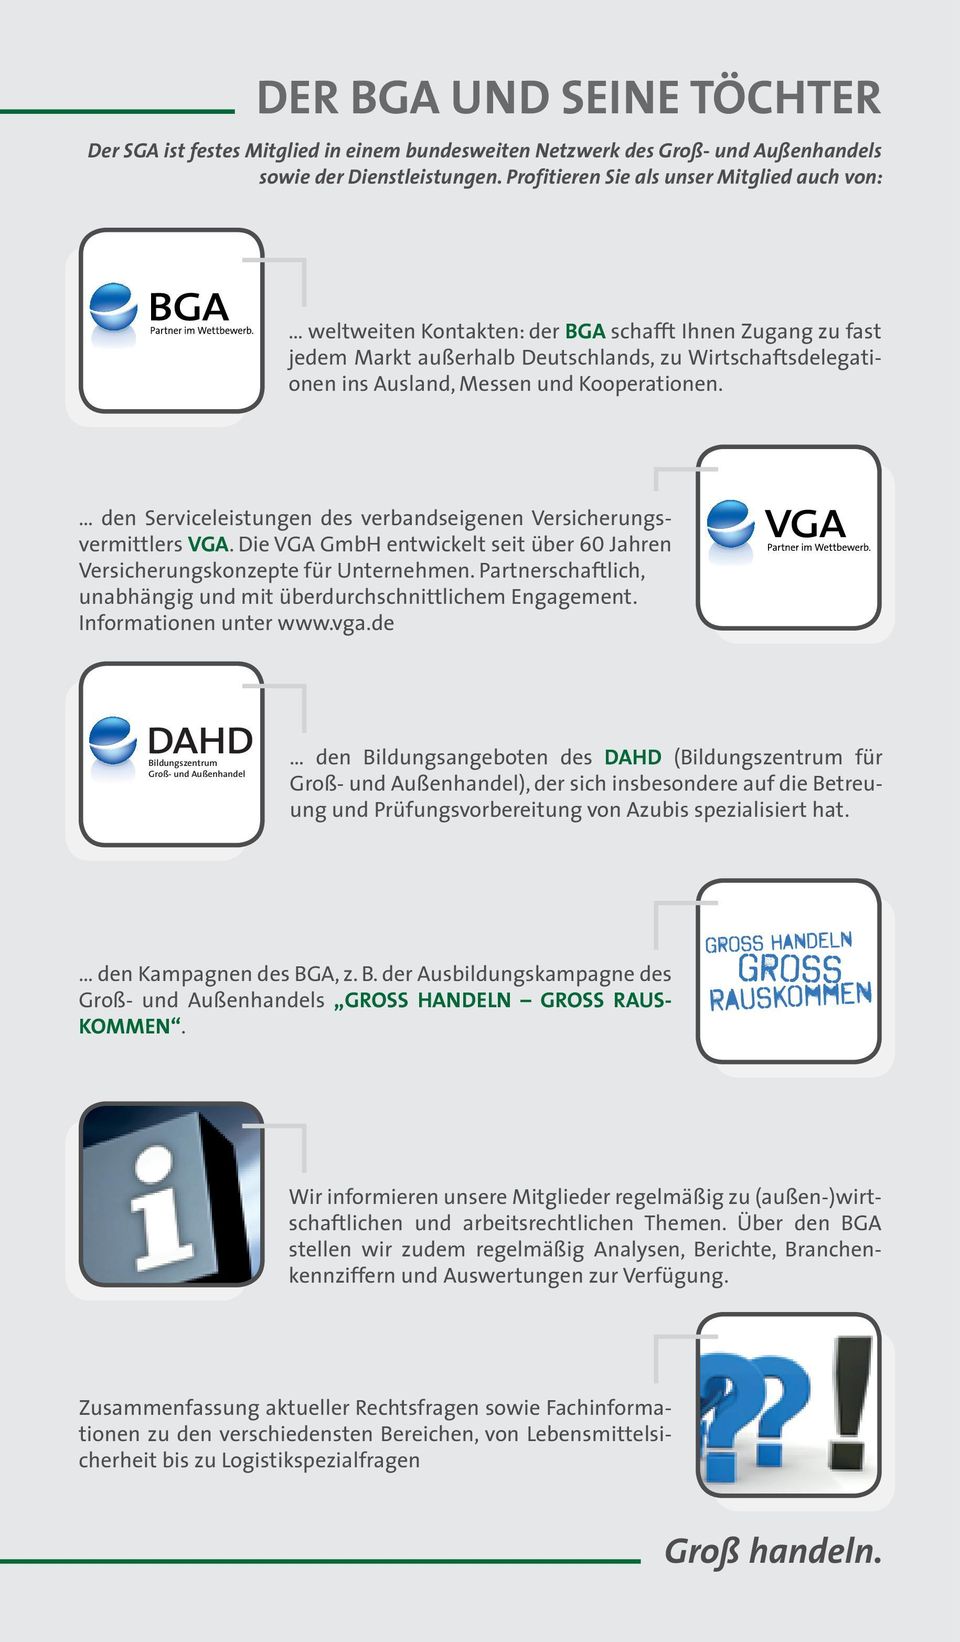 Kooperationen. den Serviceleistungen des verbandseigenen Versicherungsvermittlers VGA. Die VGA GmbH entwickelt seit über 60 Jahren Versicherungskonzepte für Unternehmen.